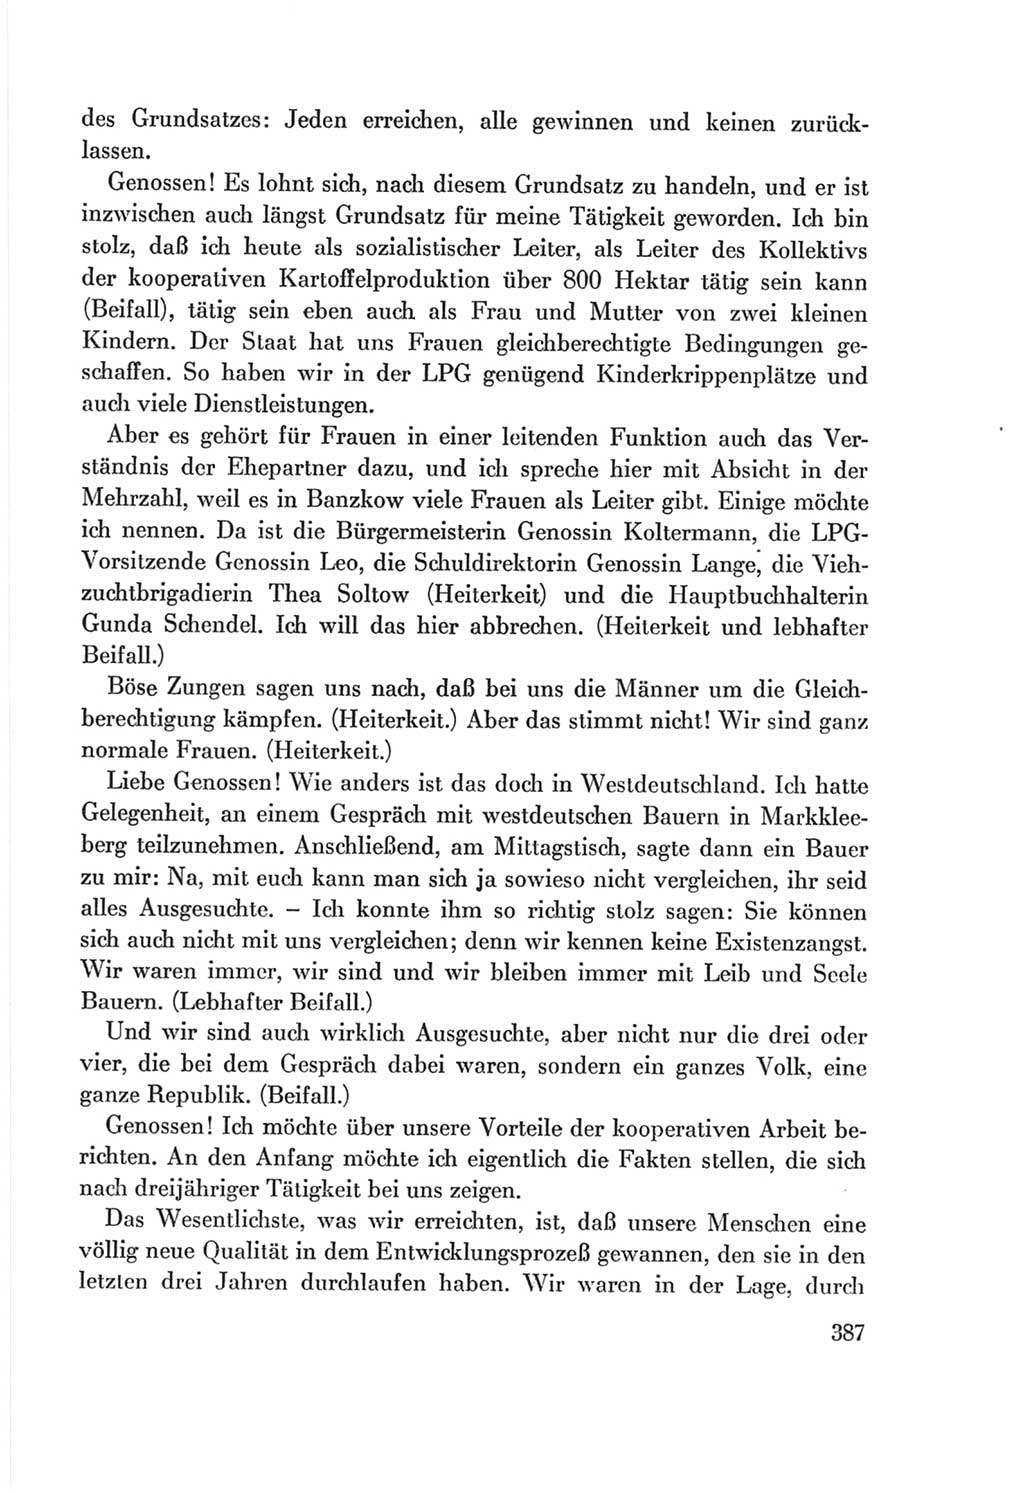 Protokoll der Verhandlungen des Ⅷ. Parteitages der Sozialistischen Einheitspartei Deutschlands (SED) [Deutsche Demokratische Republik (DDR)] 1971, Band 1, Seite 387 (Prot. Verh. Ⅷ. PT SED DDR 1971, Bd. 1, S. 387)